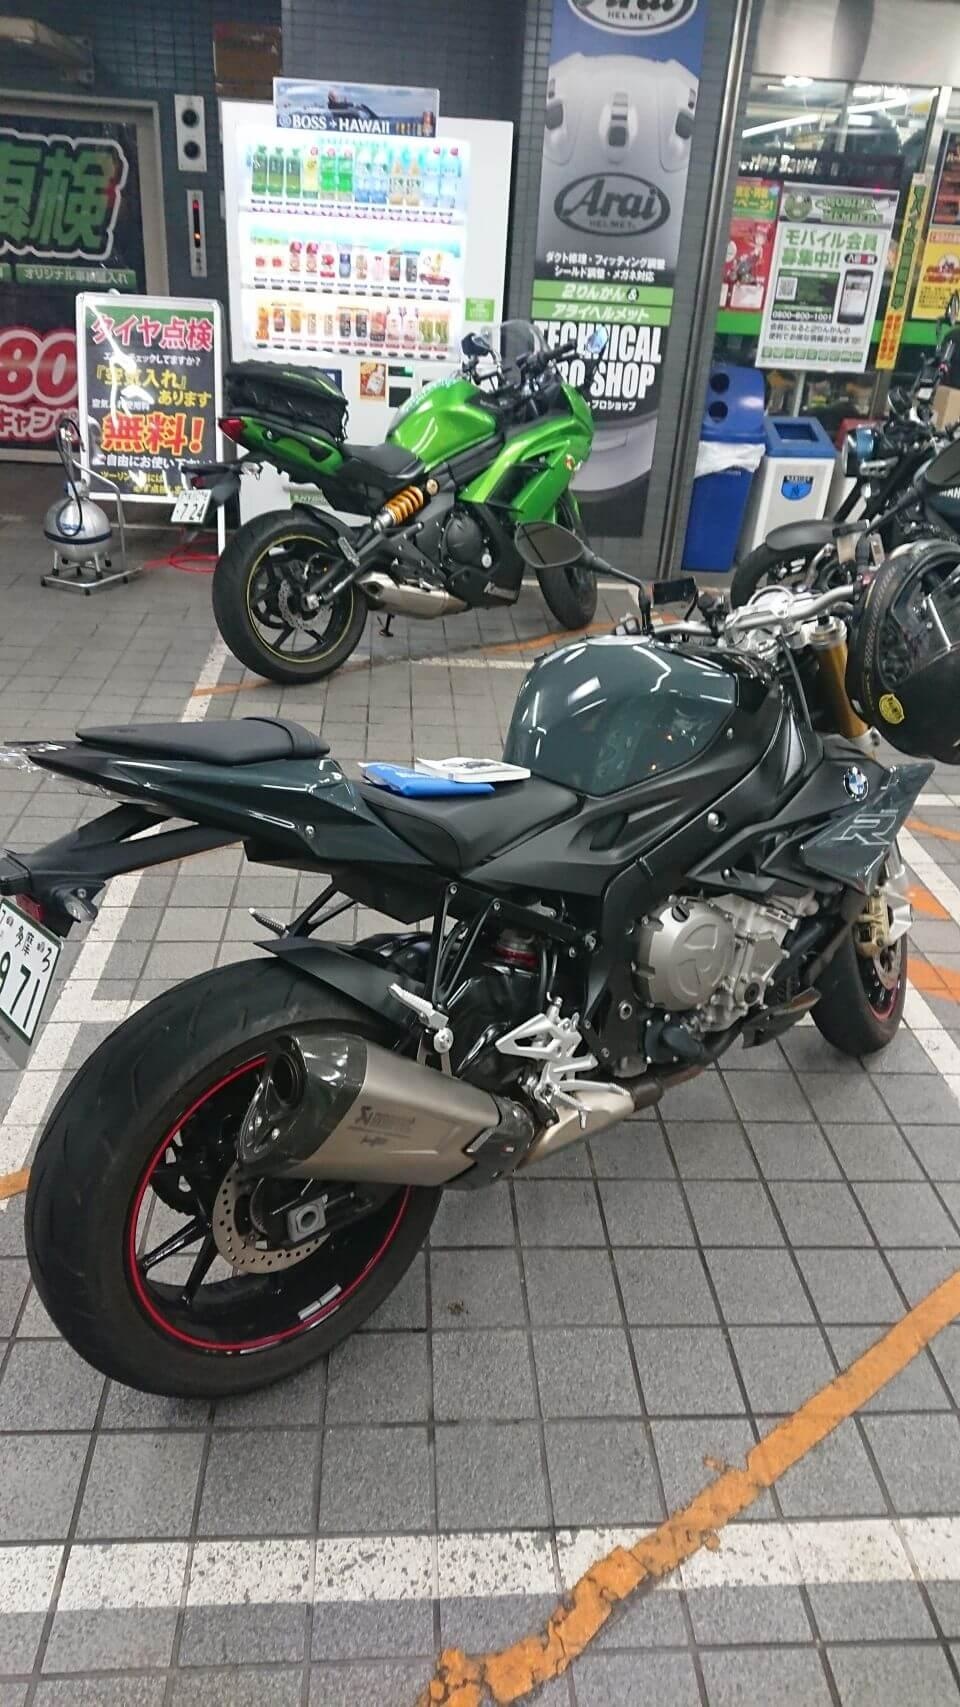 Ninja 650 and BMW S1000R